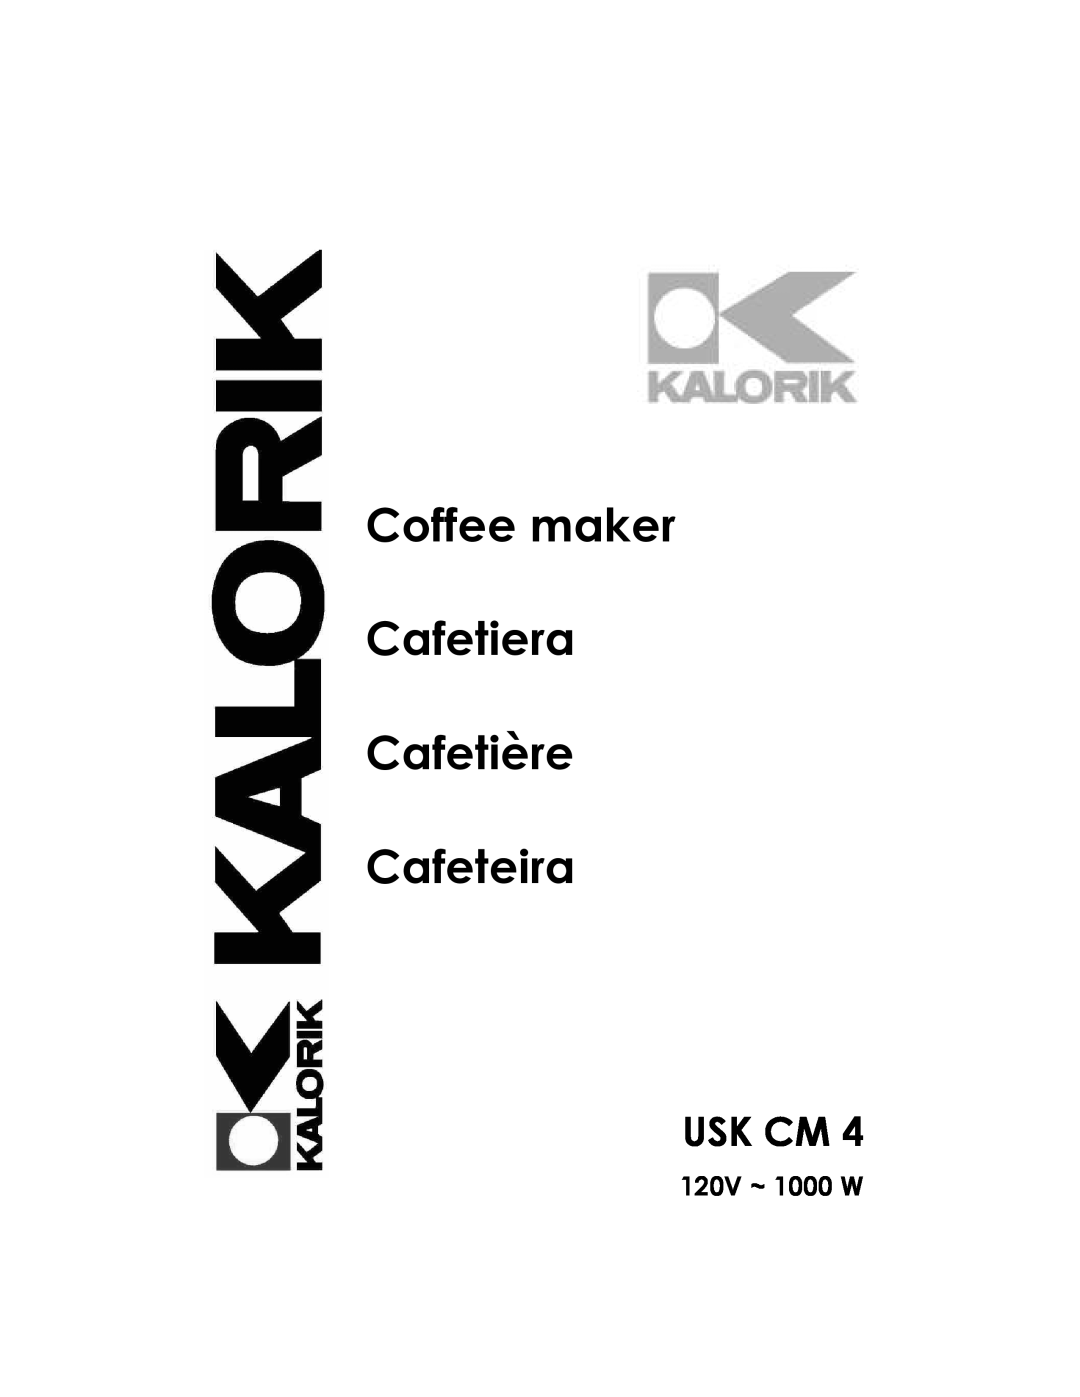 Kalorik USK CM 4 manual Usk Cm, 120V ~ 1000 W, Coffee maker Cafetiera Cafetière Cafeteira 